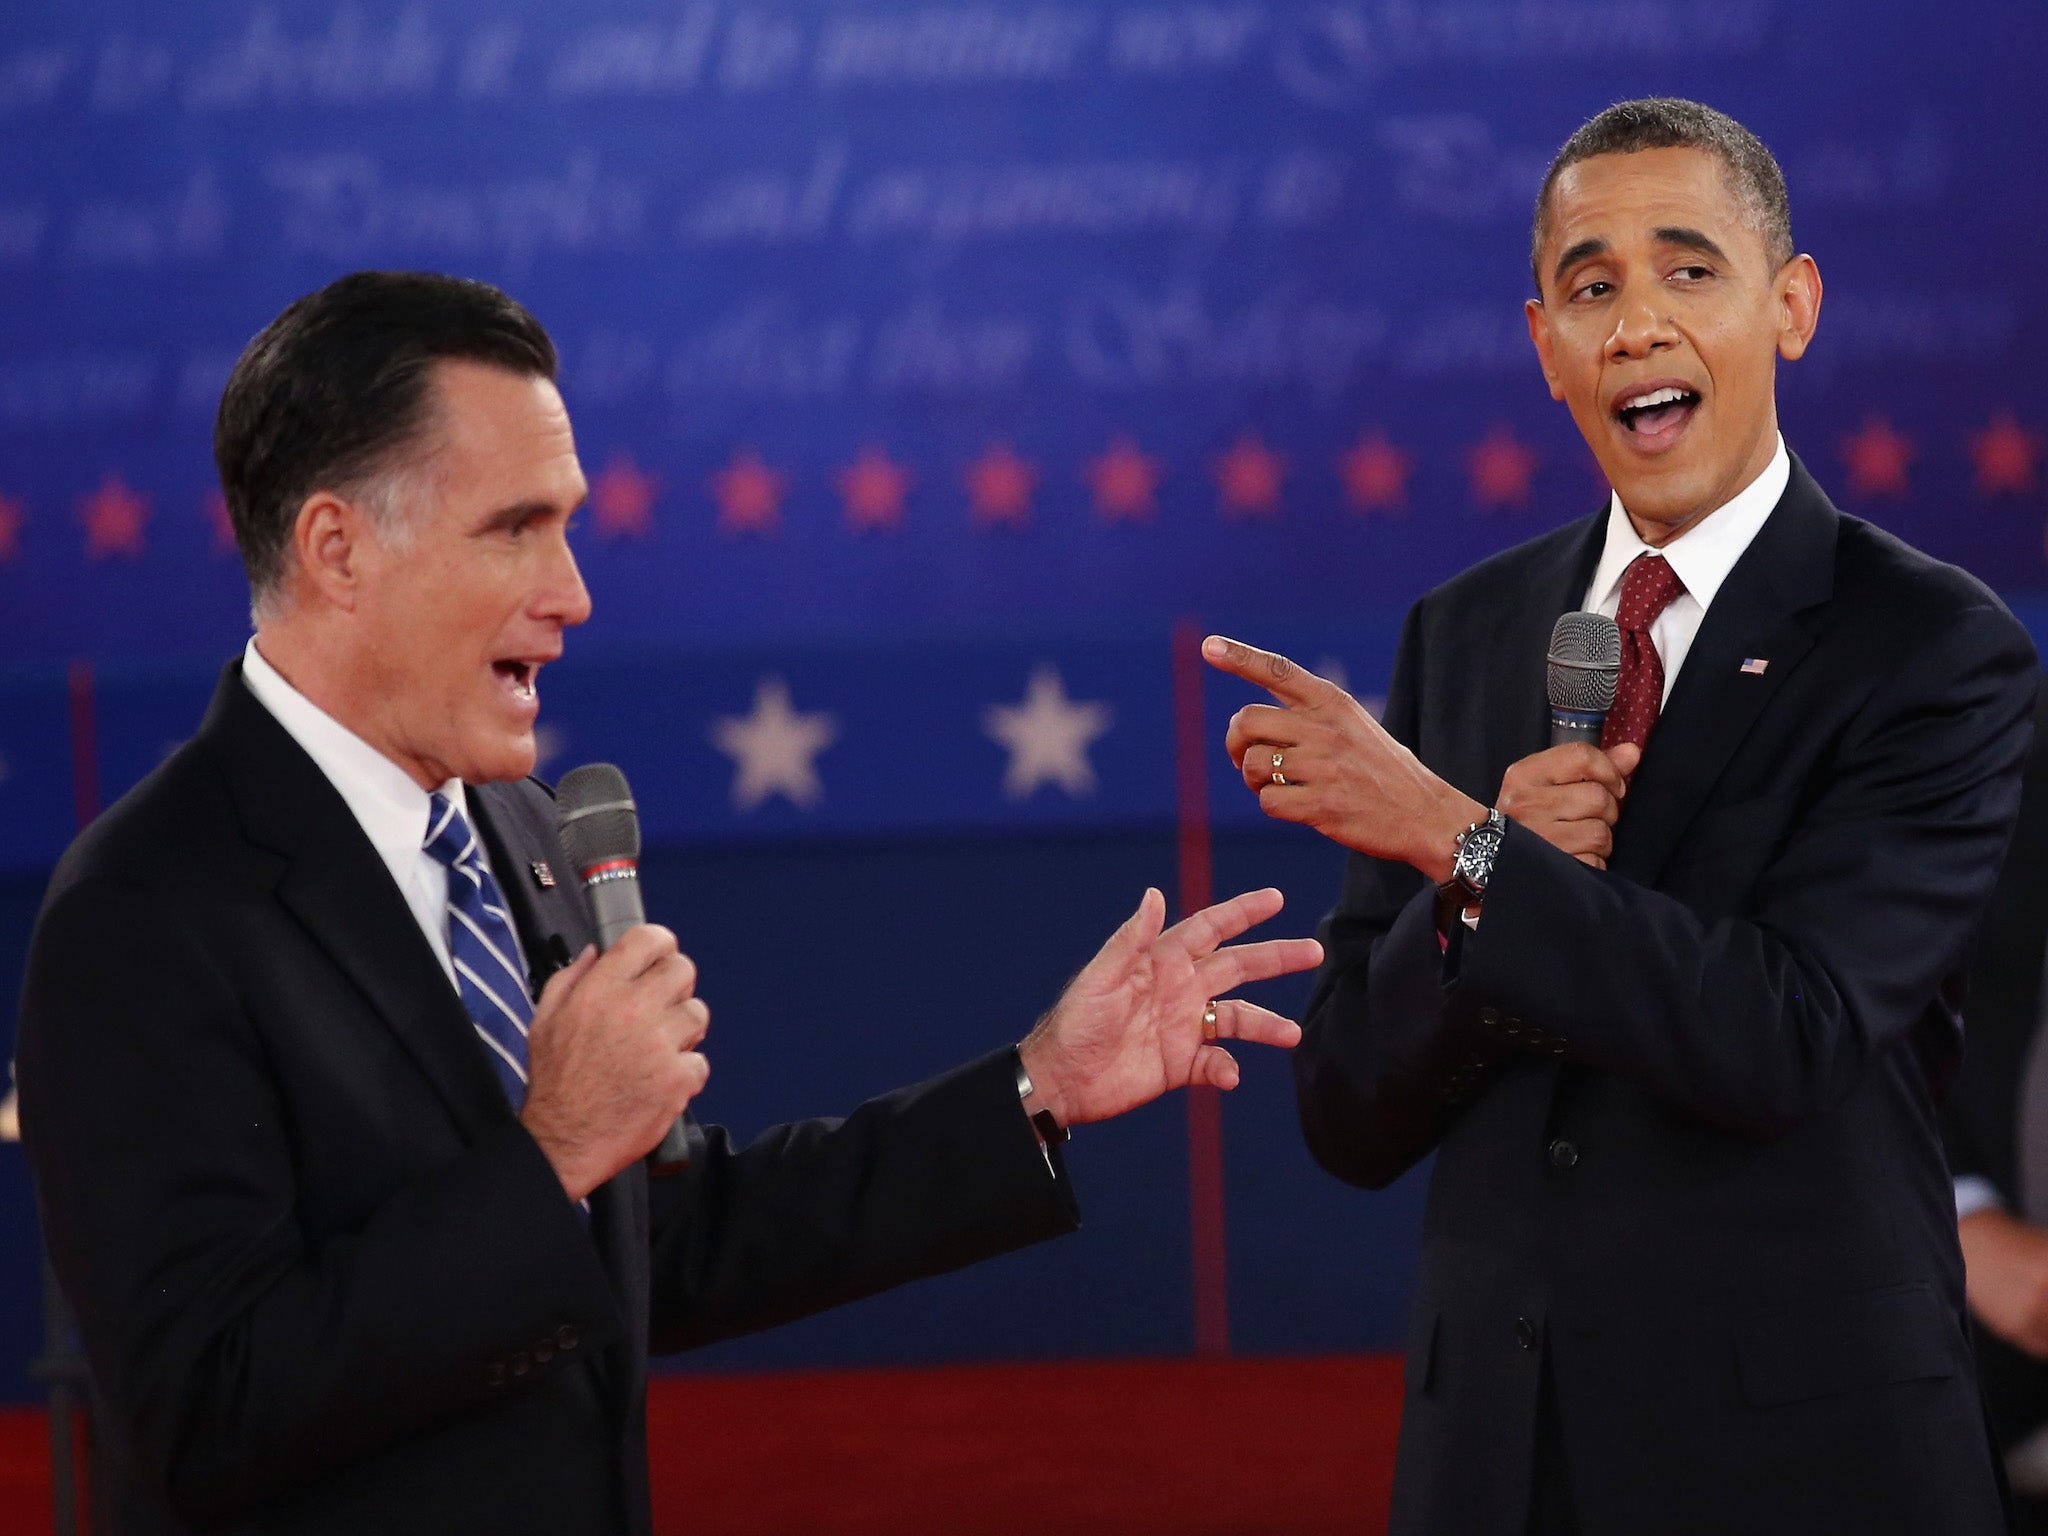 Mitt Romney and Barack Obama spoke after the 2012 election result